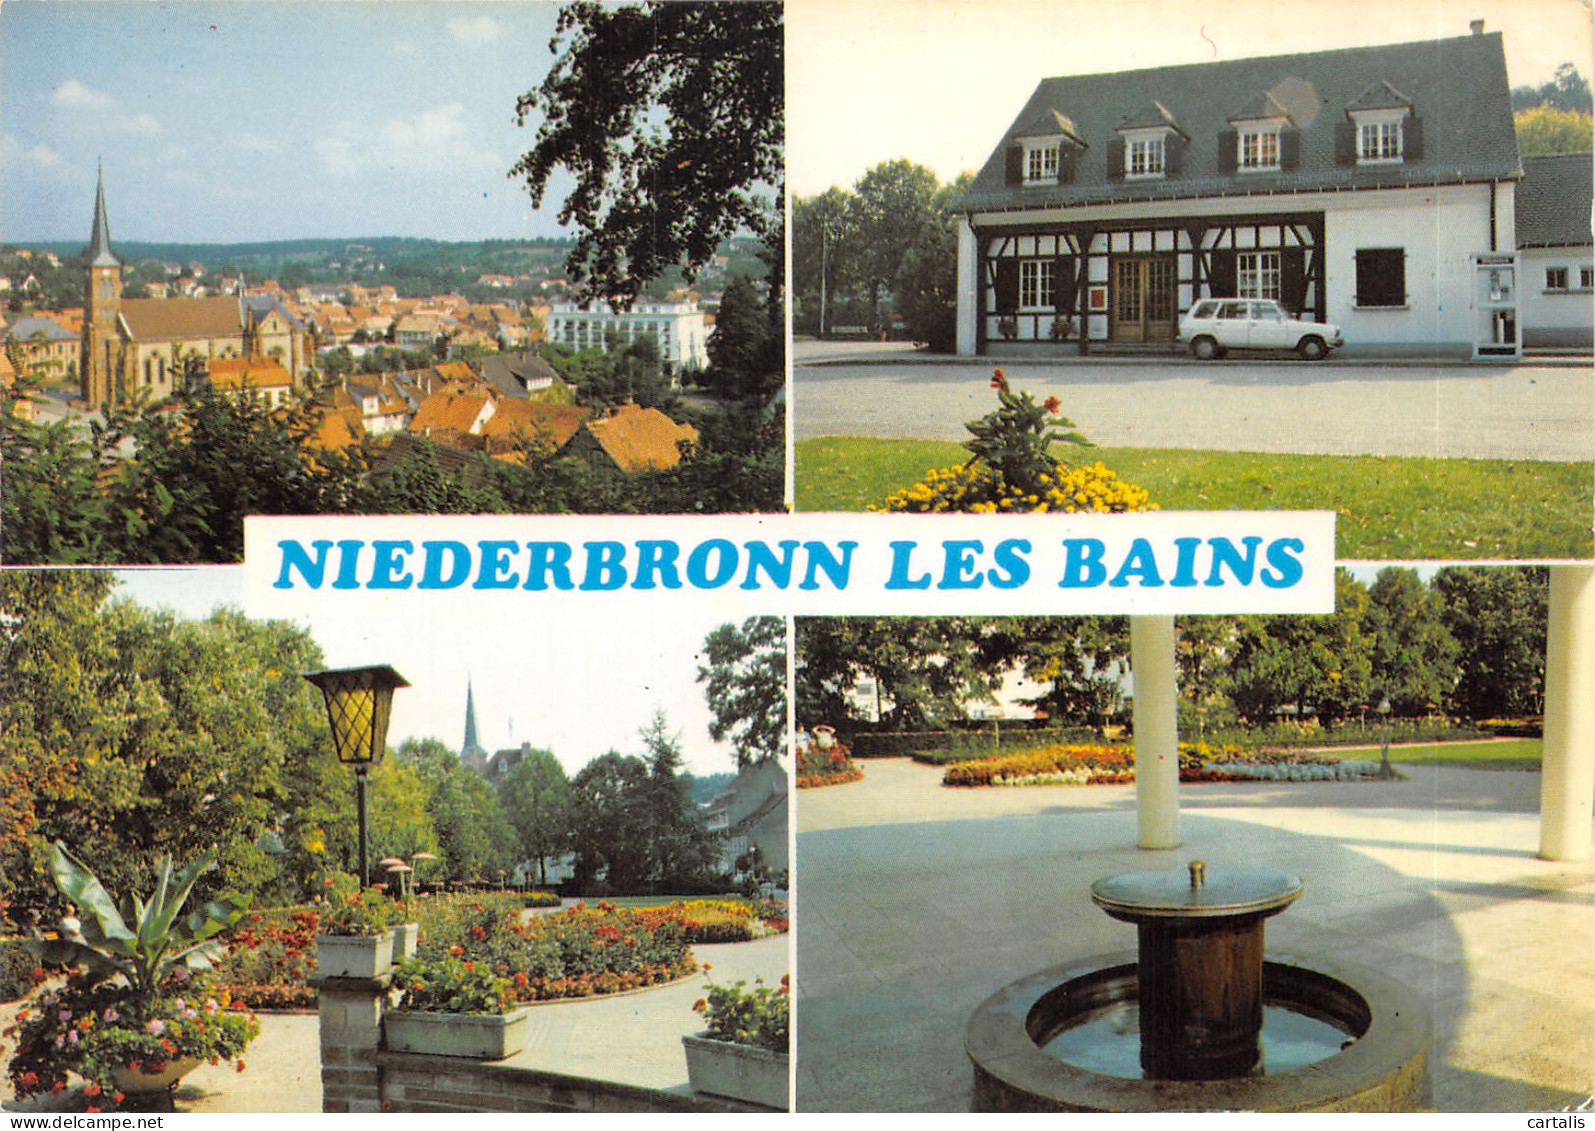 67-NIEDERBRONN LES BAINS-N 592-B/0245 - Niederbronn Les Bains